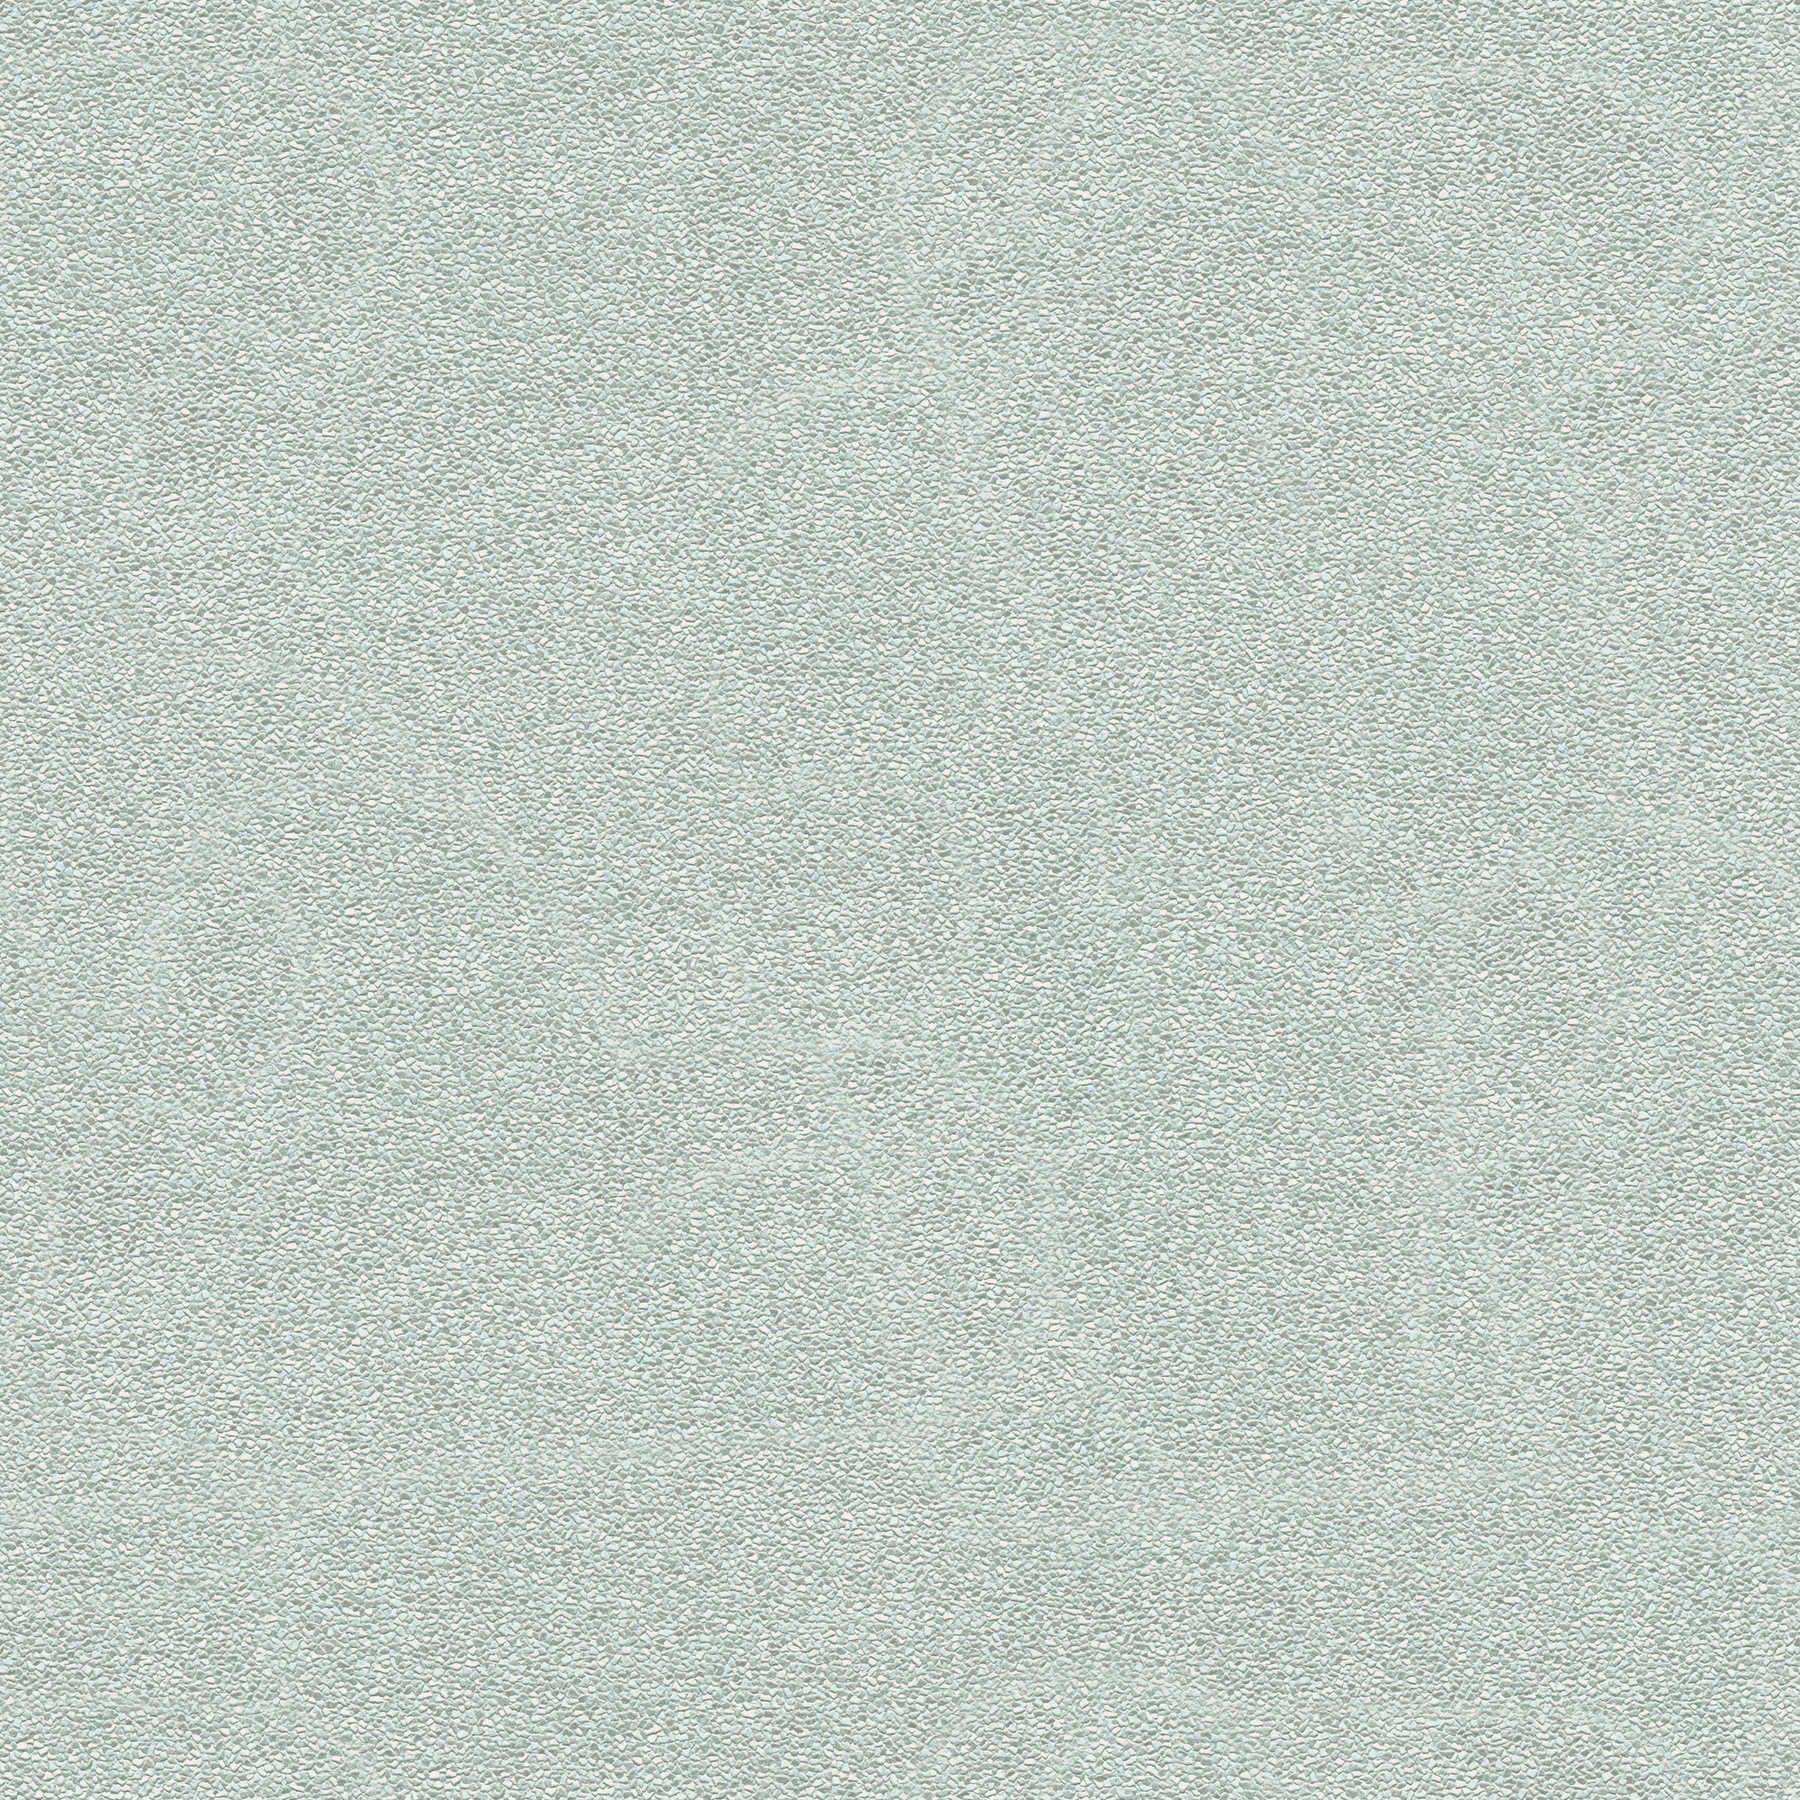 Carta da parati texture sabbia in grigio-verde con finitura satinata
